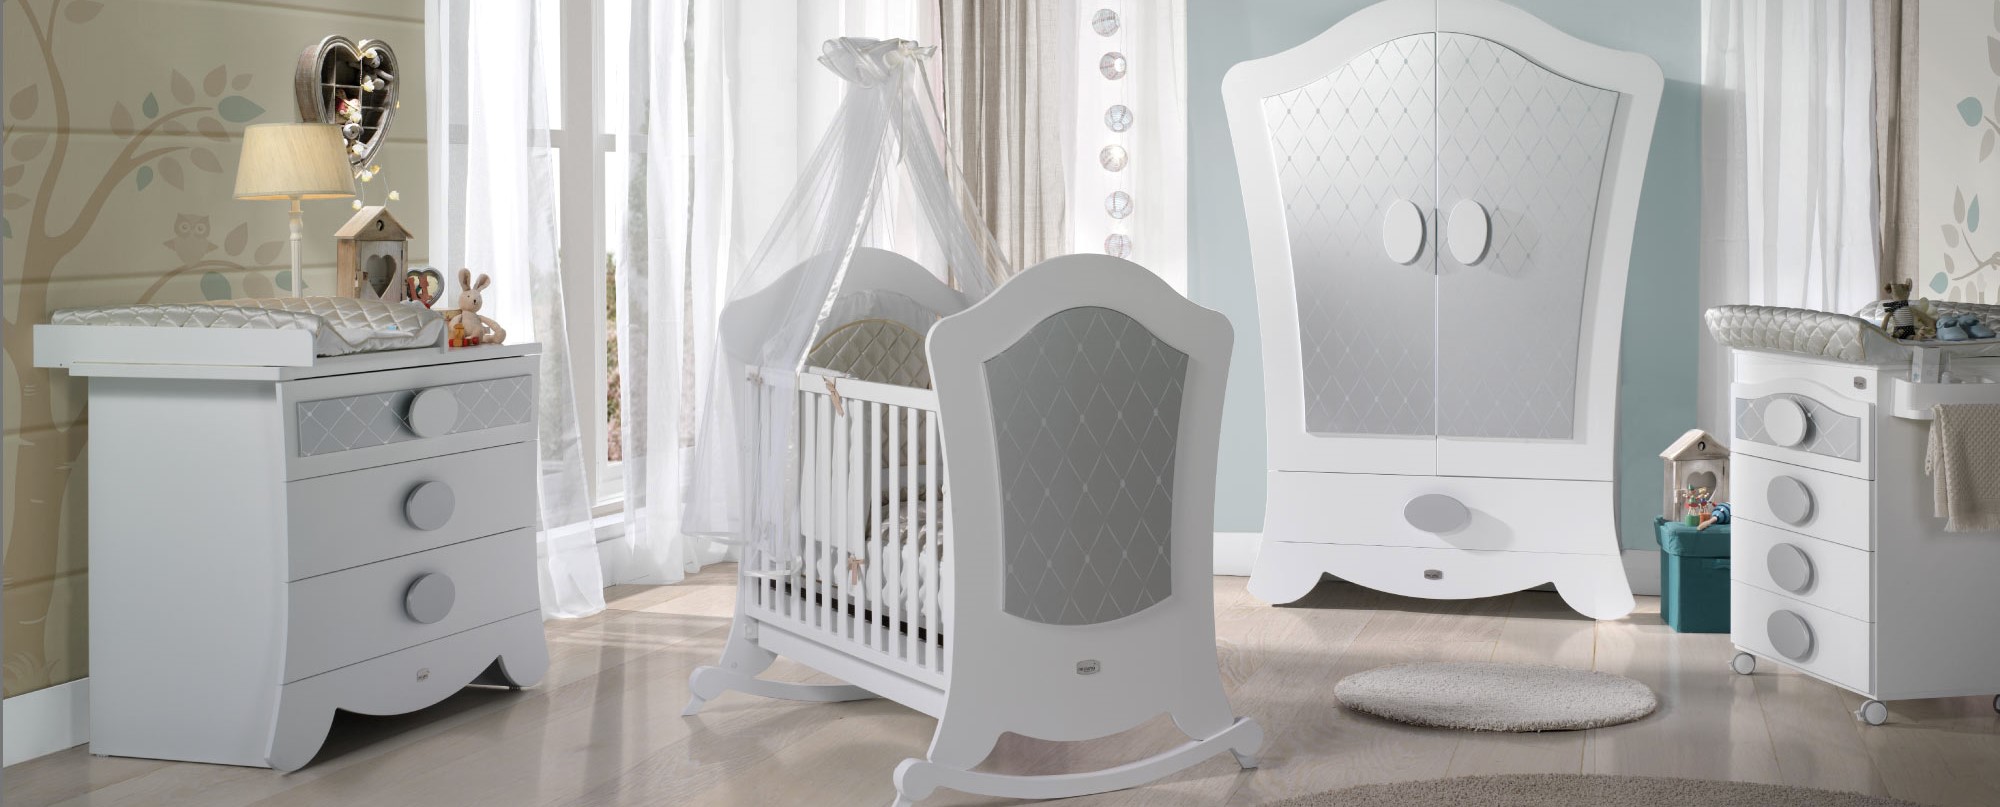 baby room , مفروشات-و-ديكورات- اعلن مجاناً في منصة وموقع عنكبوت للاعلانات المجانية المبوبة|photos/2018/03/slider1-baby-room.jpg